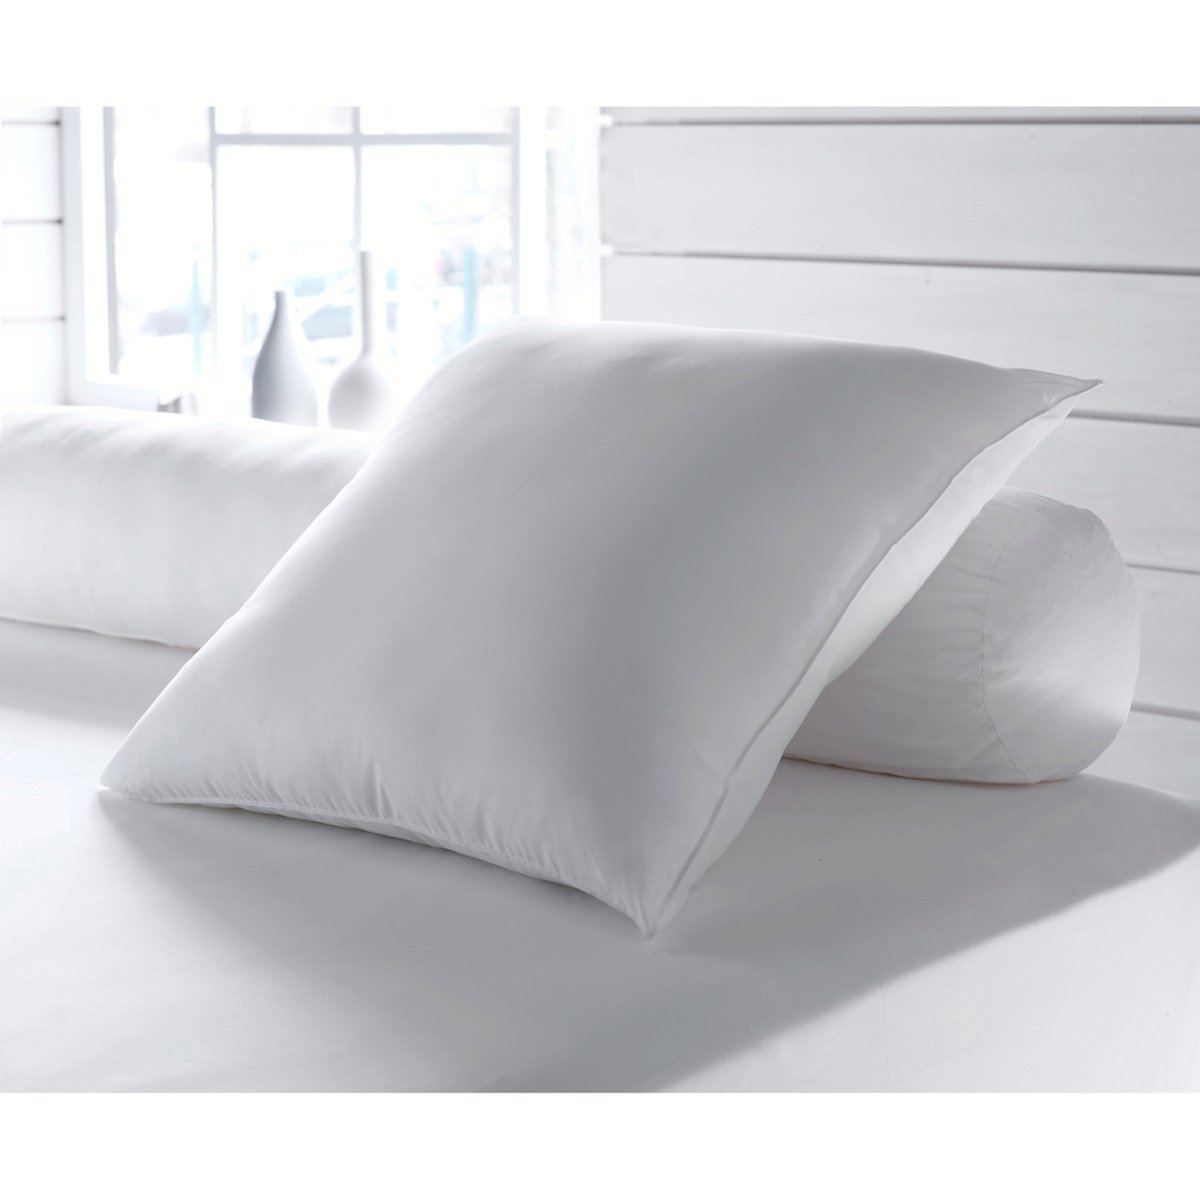 Одеяло La Redoute Экологичное с обработкой против клещей Proneem специально для летнего использования 200 x 200 см белый, размер 200 x 200 см - фото 2